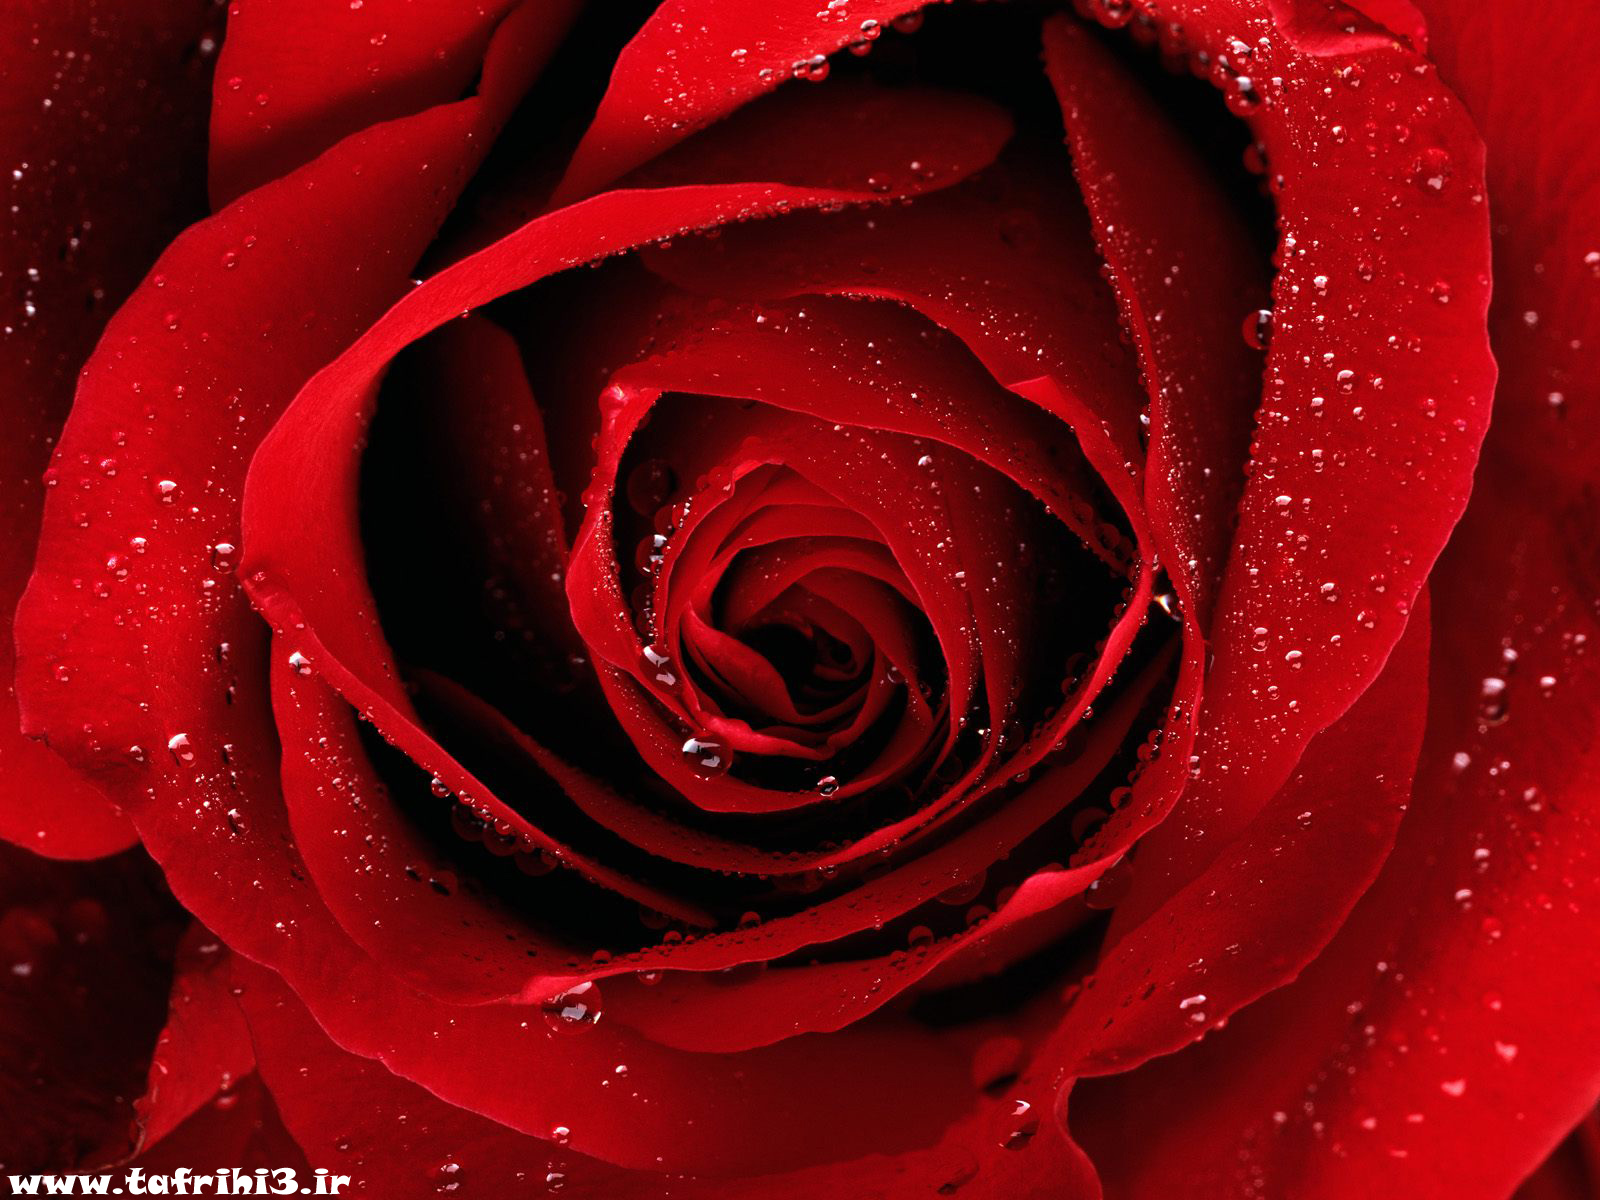 عکس های بسیار زیبا از گل رز قرمز